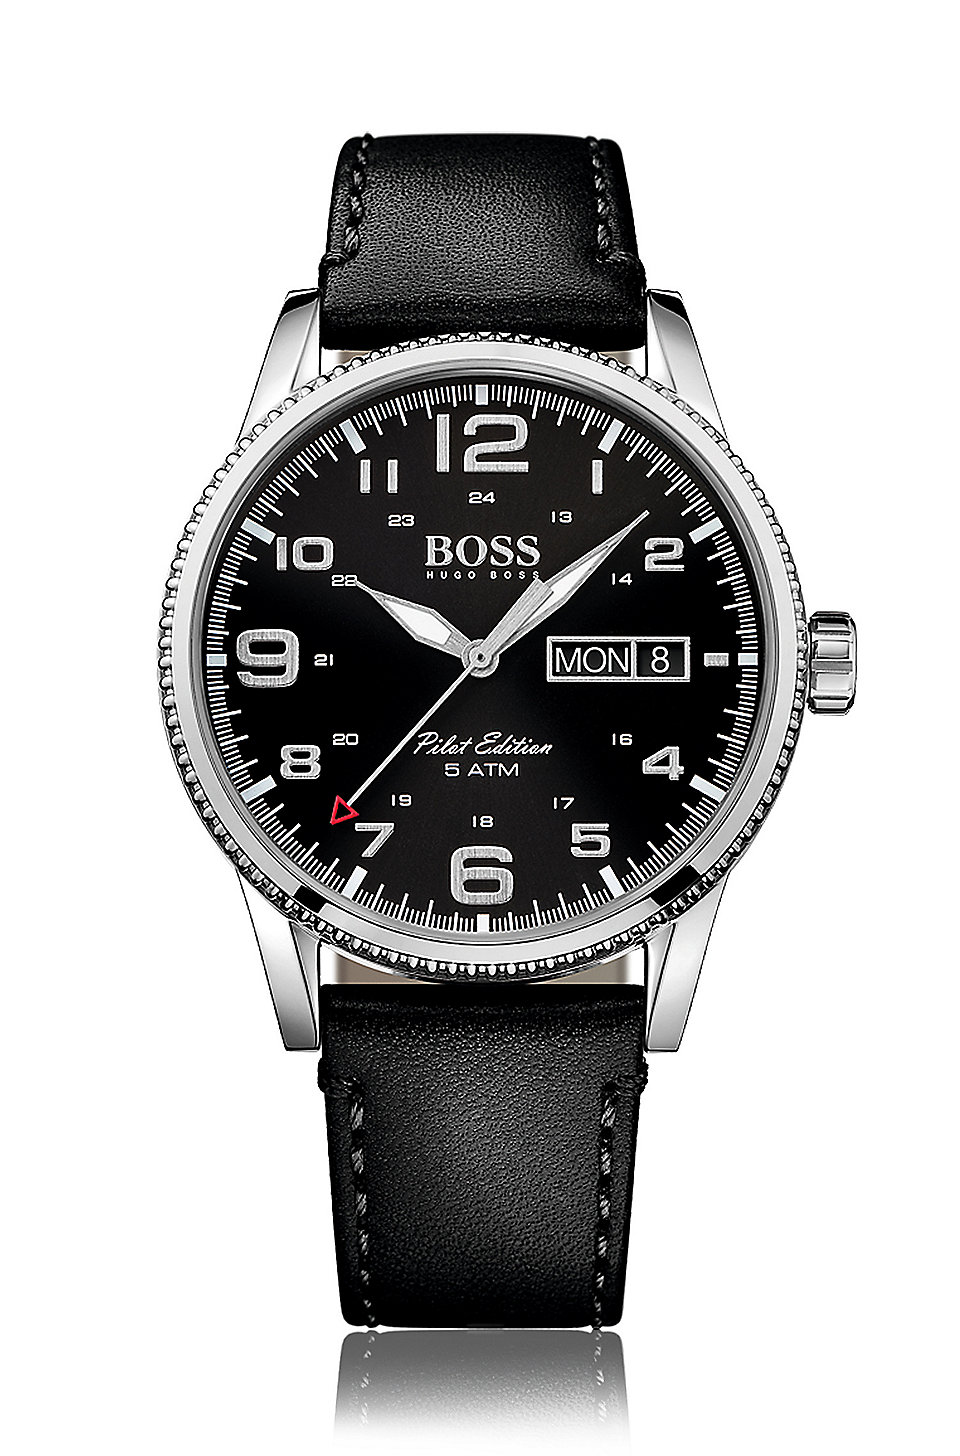 Leger echo bovenstaand BOSS - Pilot Vintage, Leather Watch | 1513330